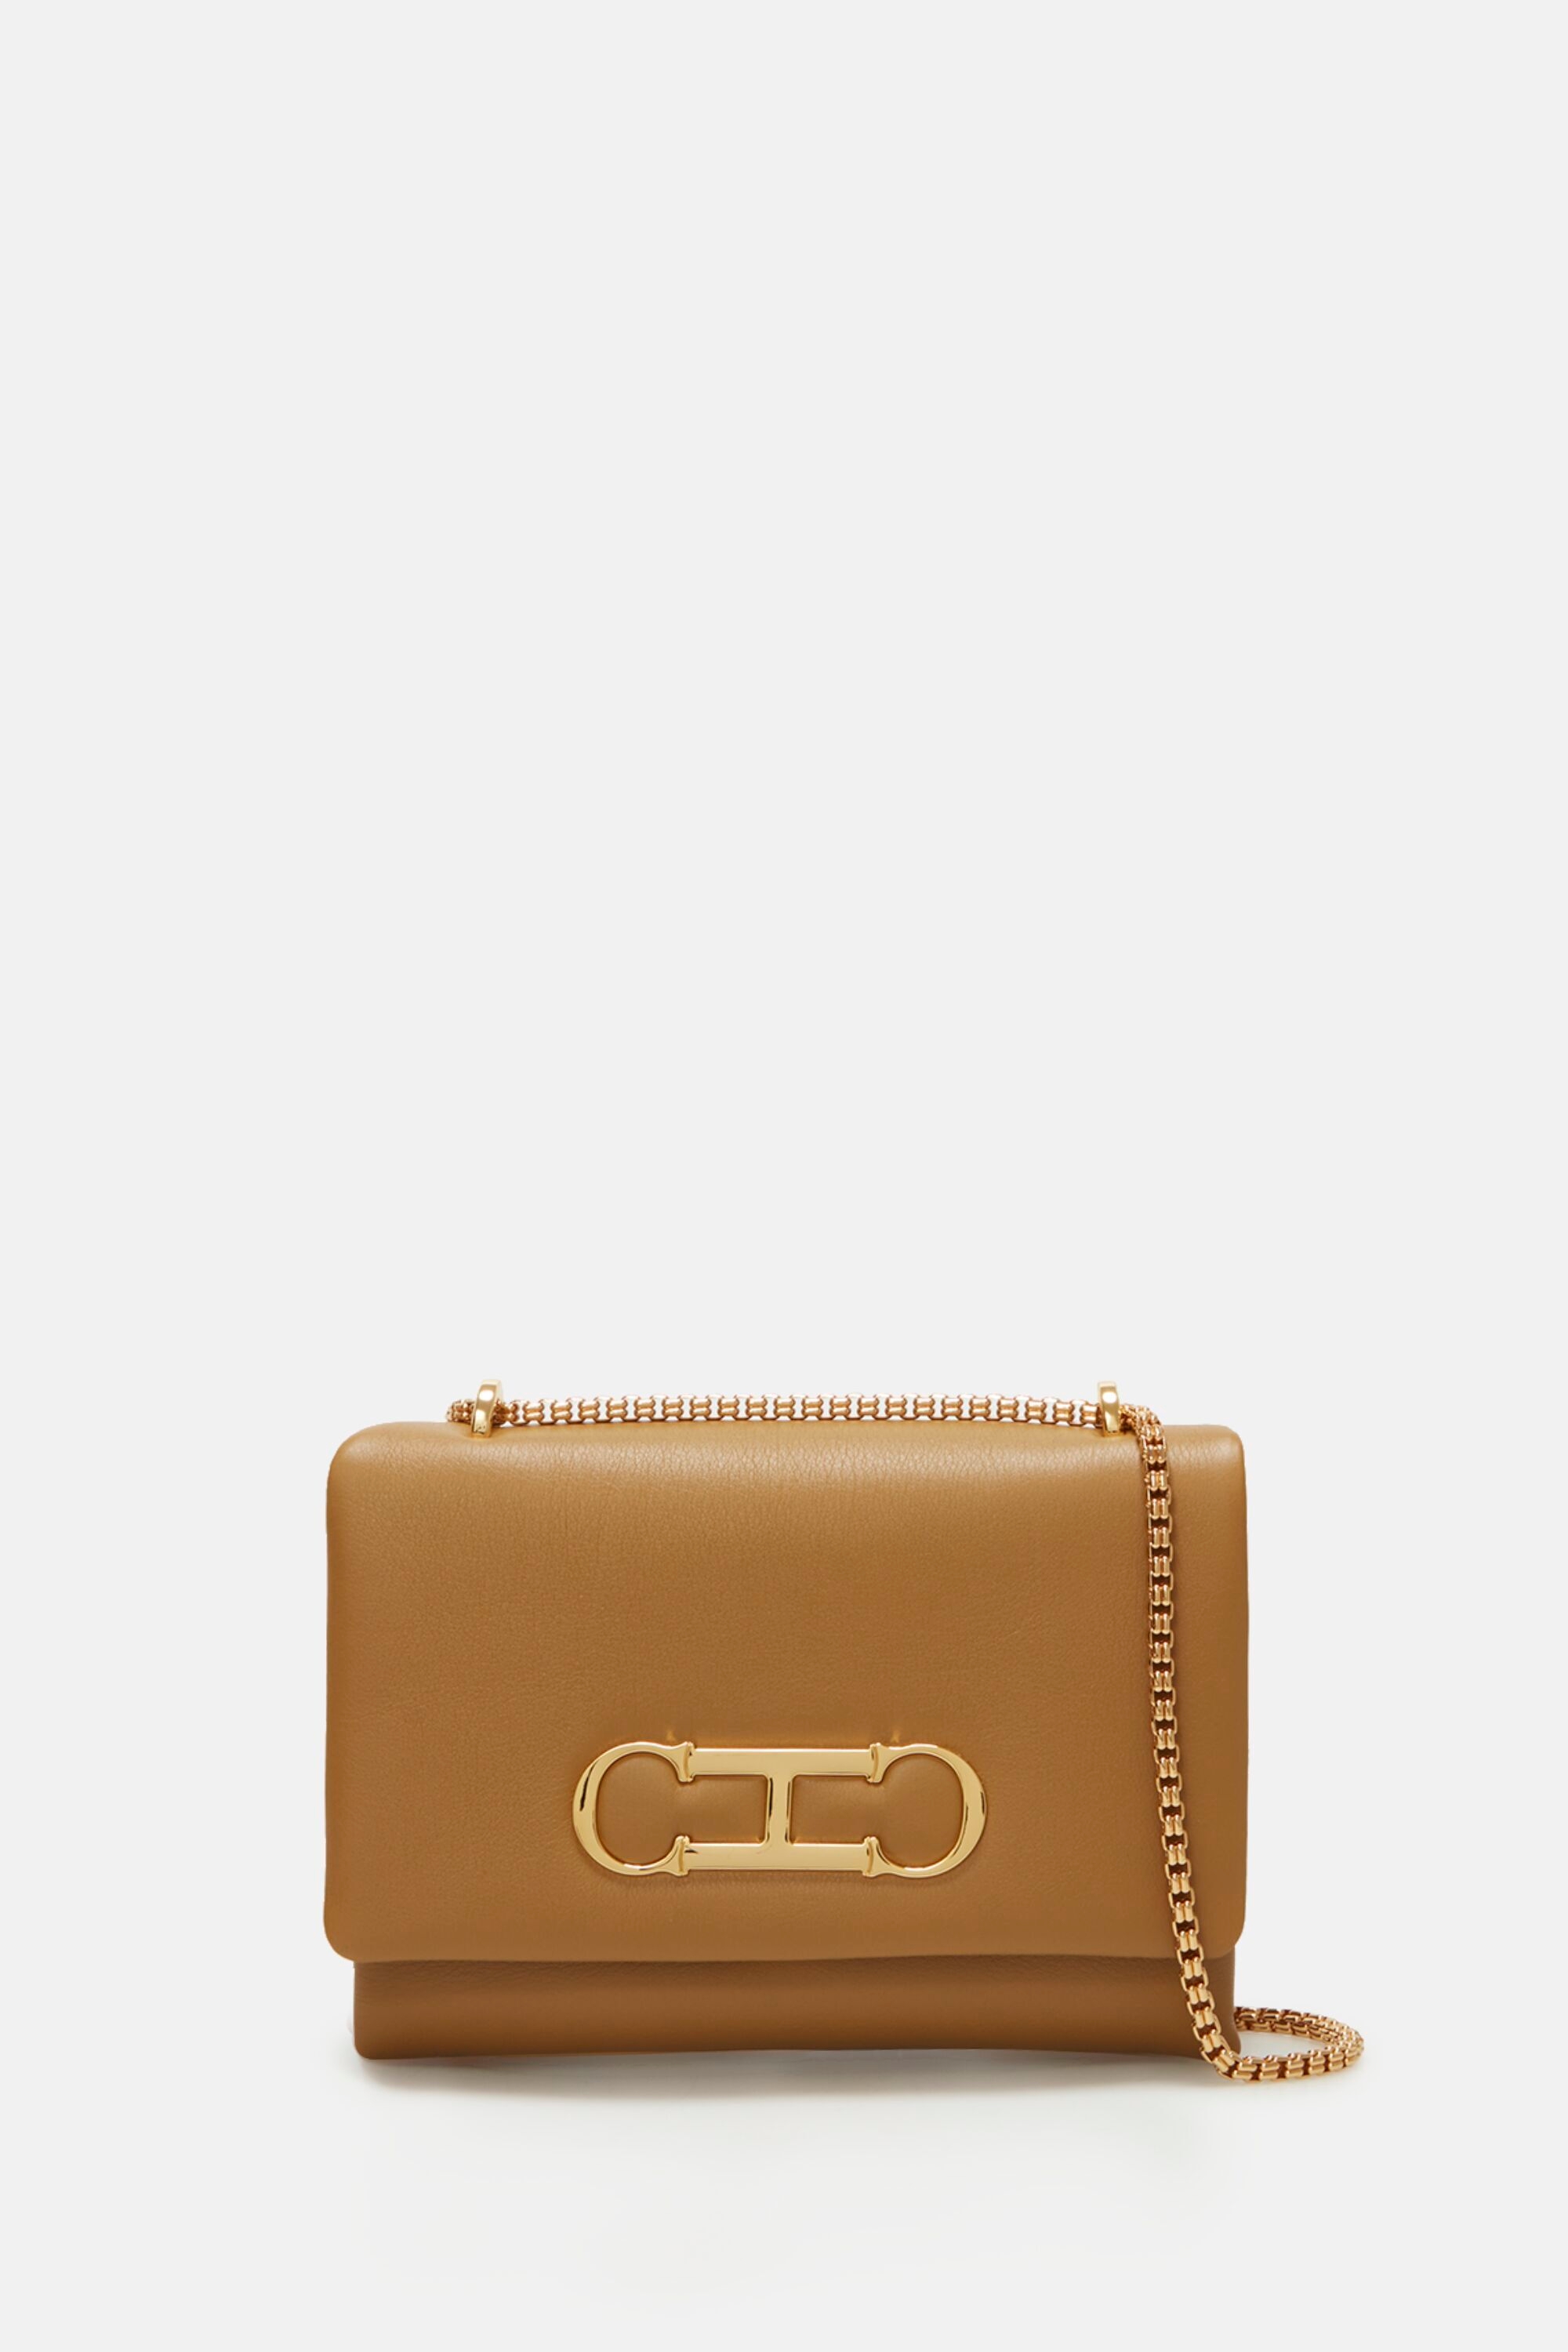 Carolina Herrera Leather Clutch Bag In Brown